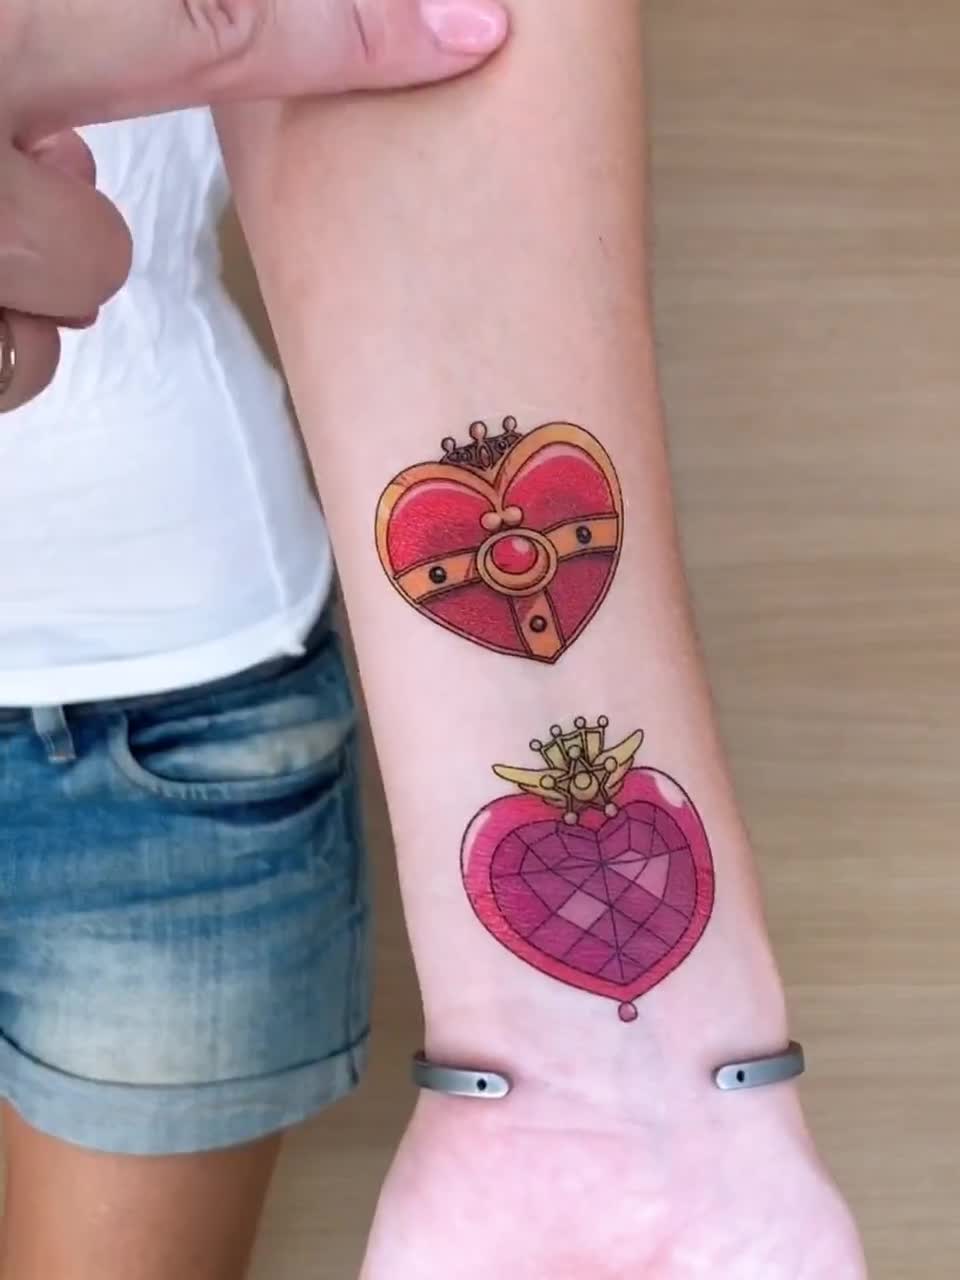 K heart tattoo || | Tattoo design for hand, Small tattoos, Heart tattoo